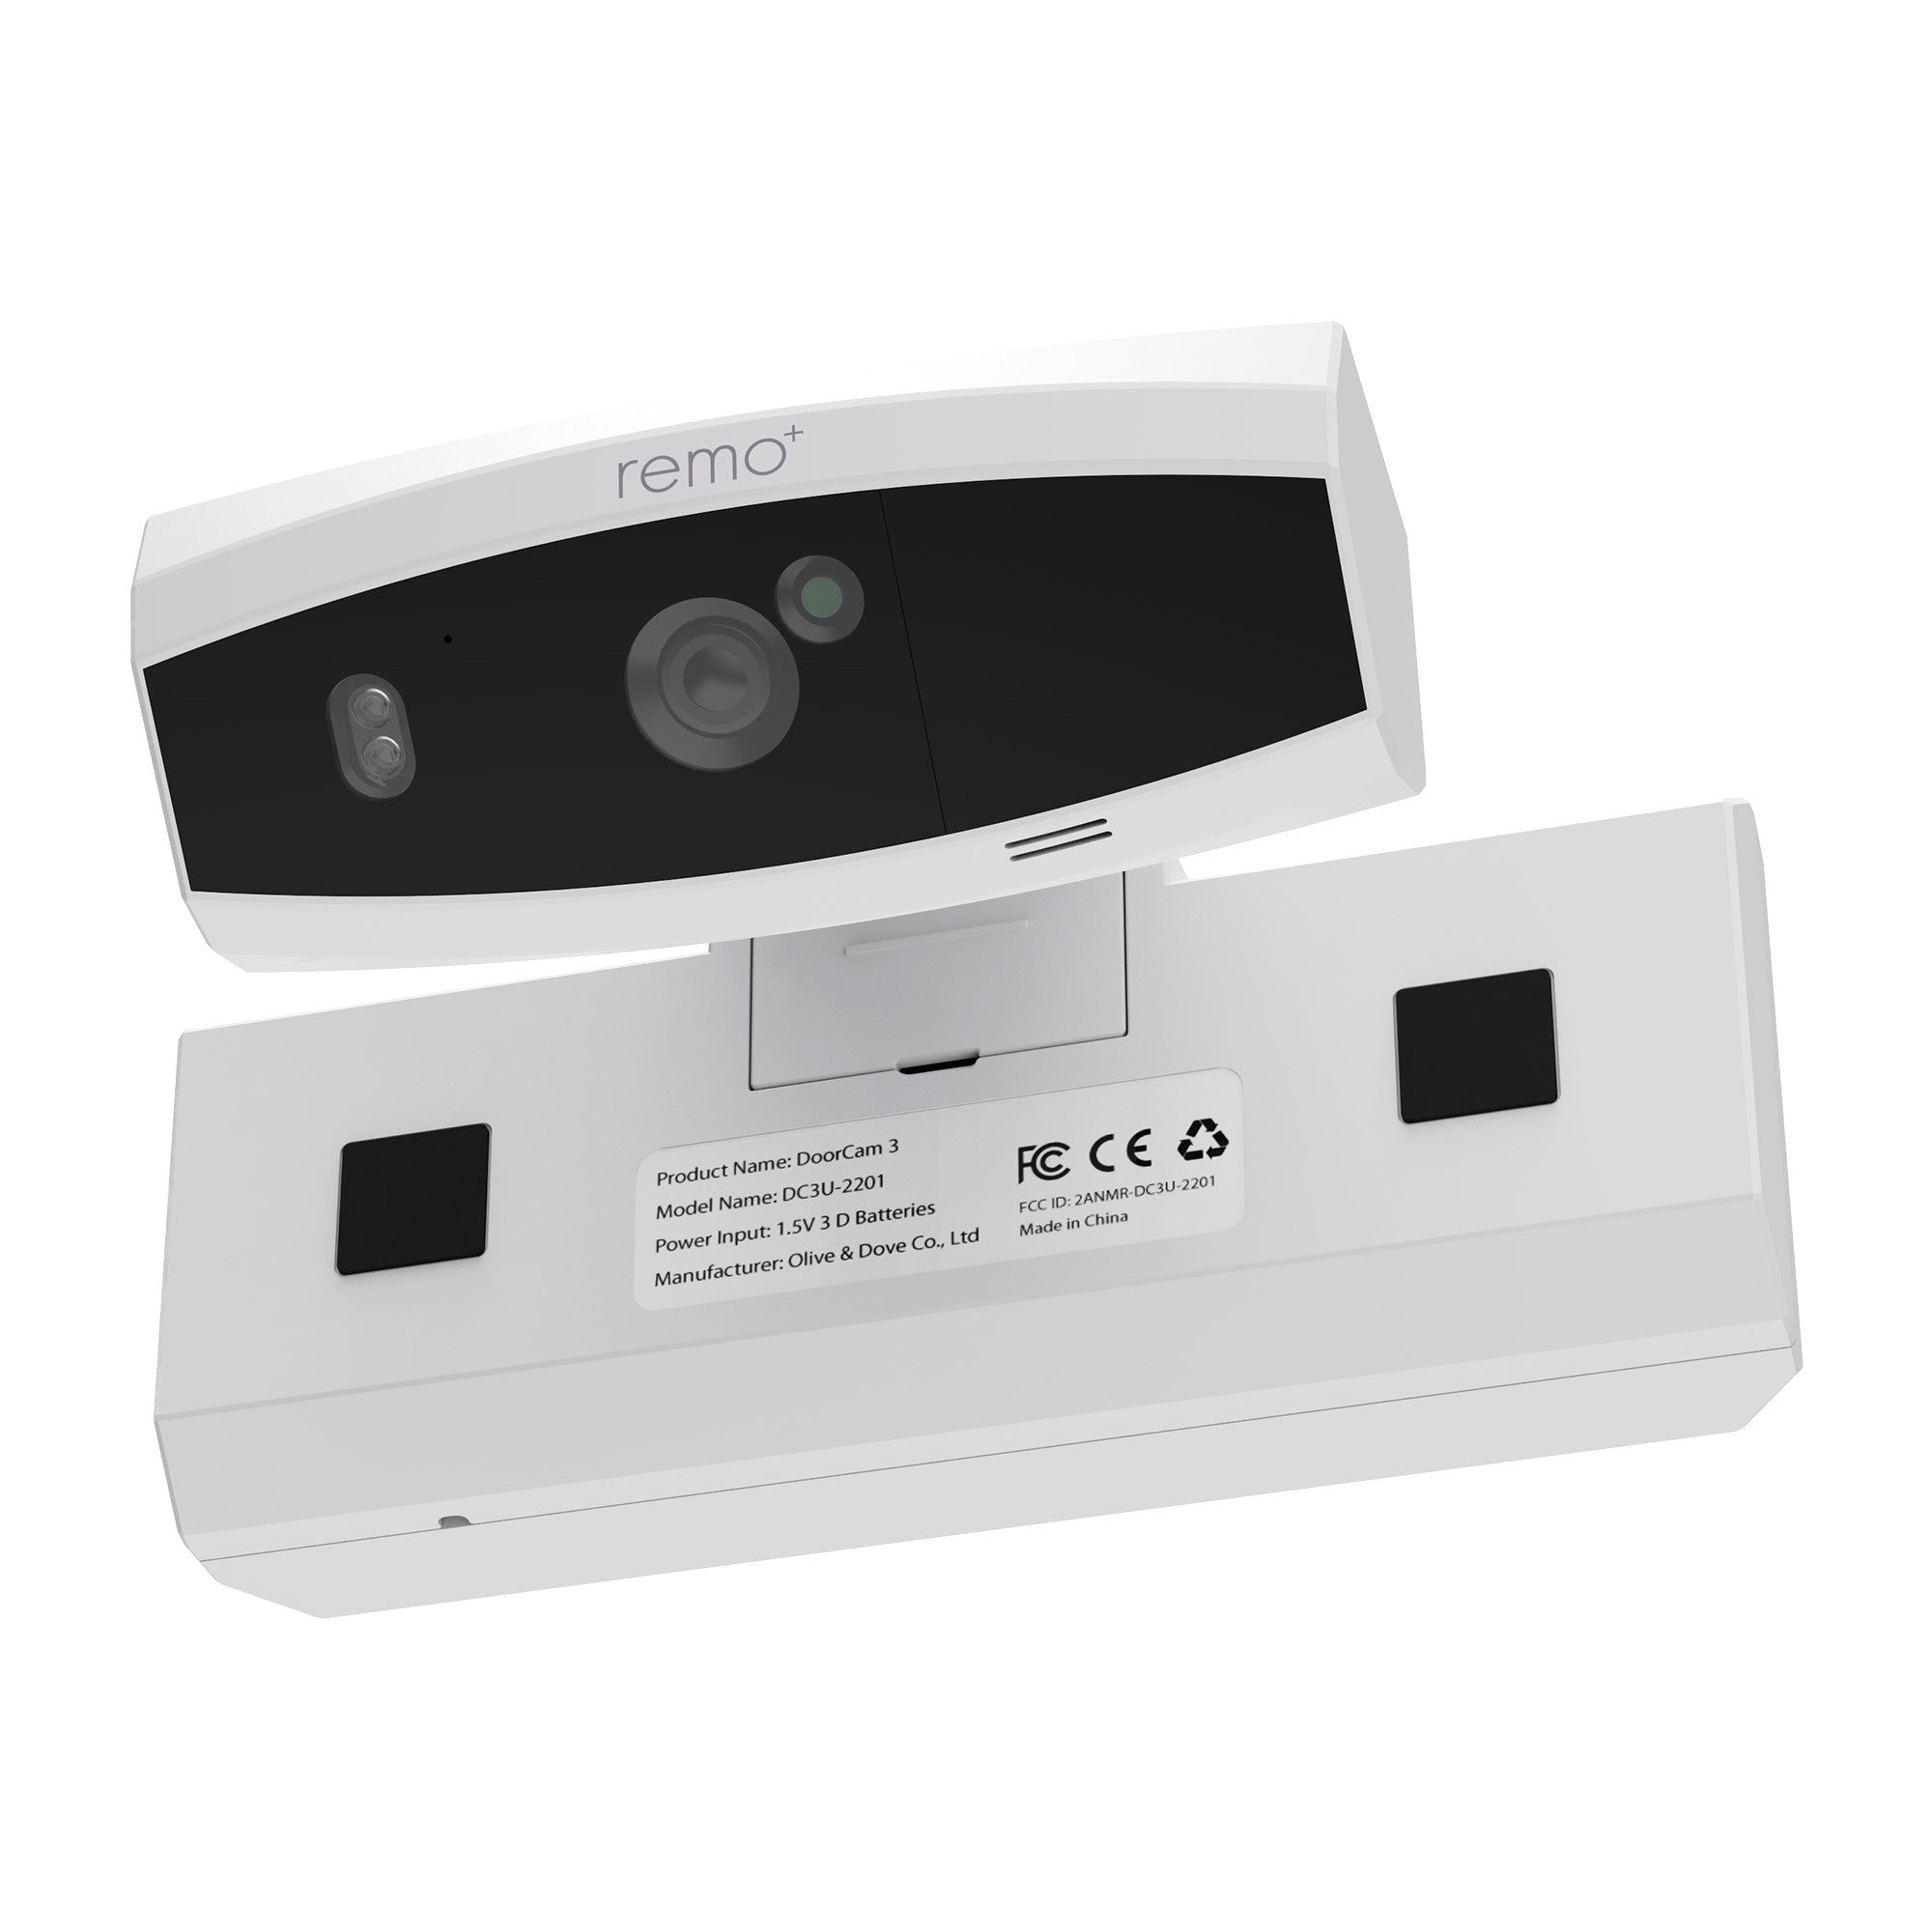 Remo+ DoorCam 3 Over-the-Door Security Camera - White - 15-10964